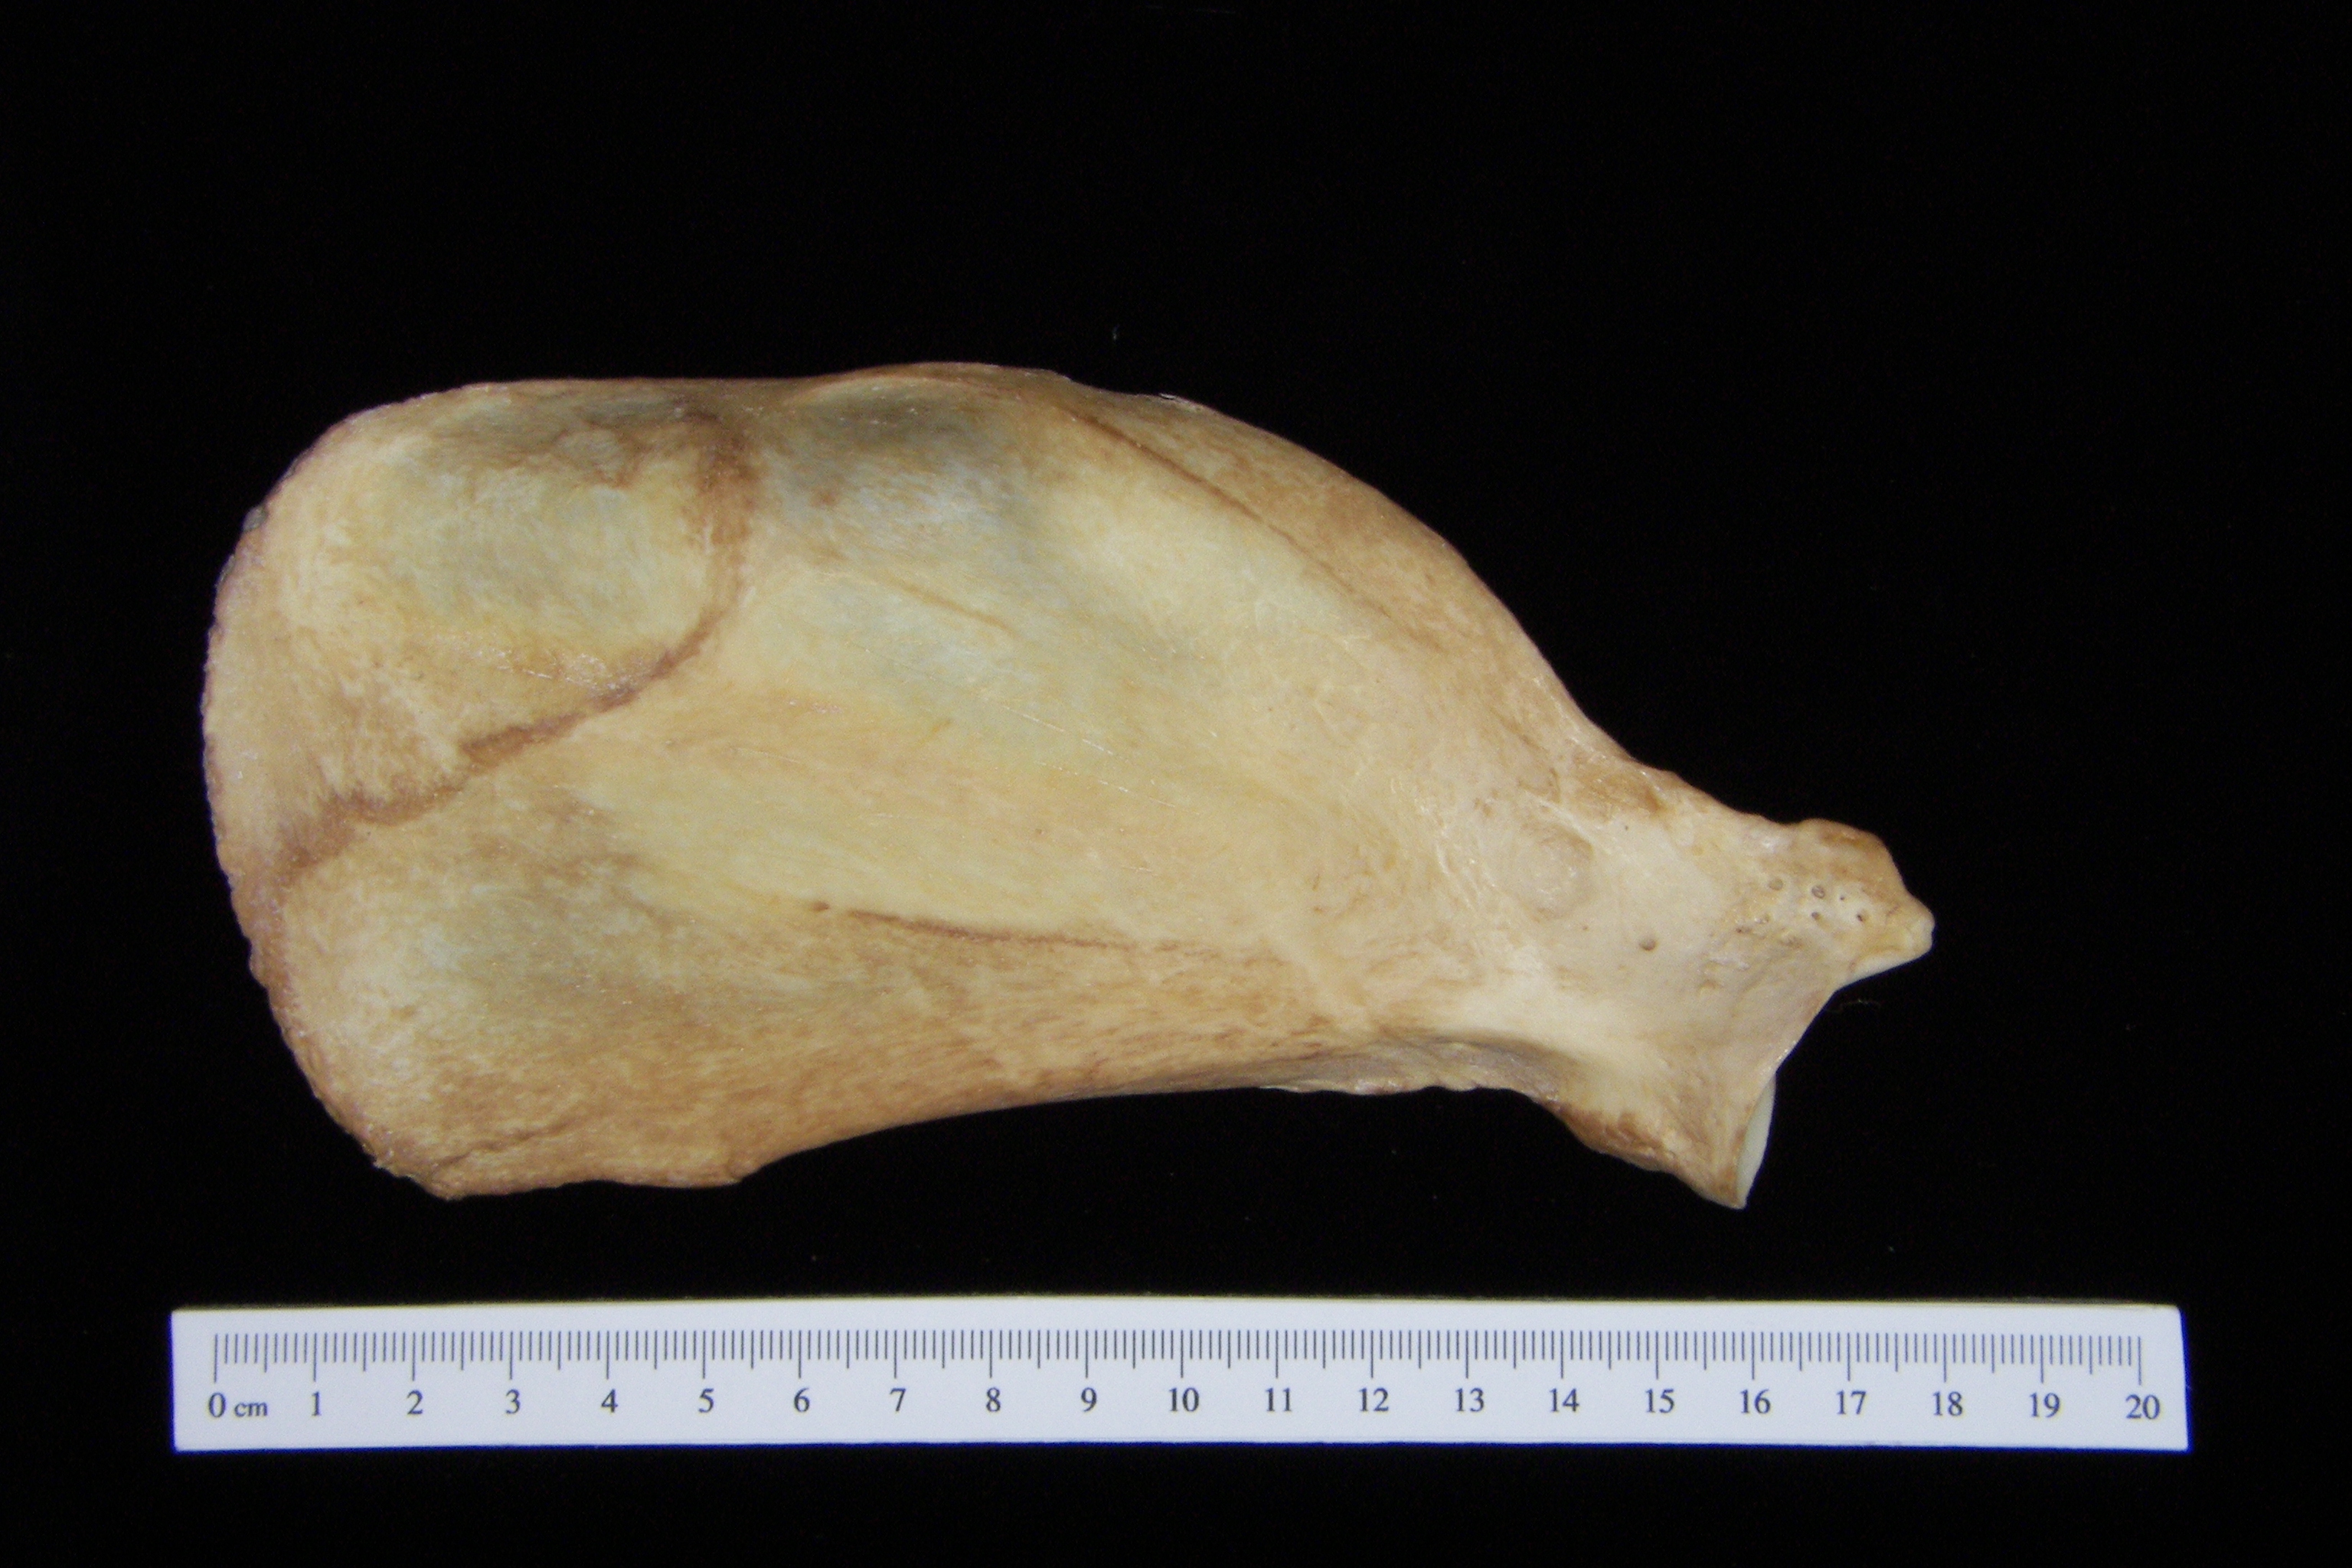 Dog (Canis lupus familiaris) left scapula, anterior view